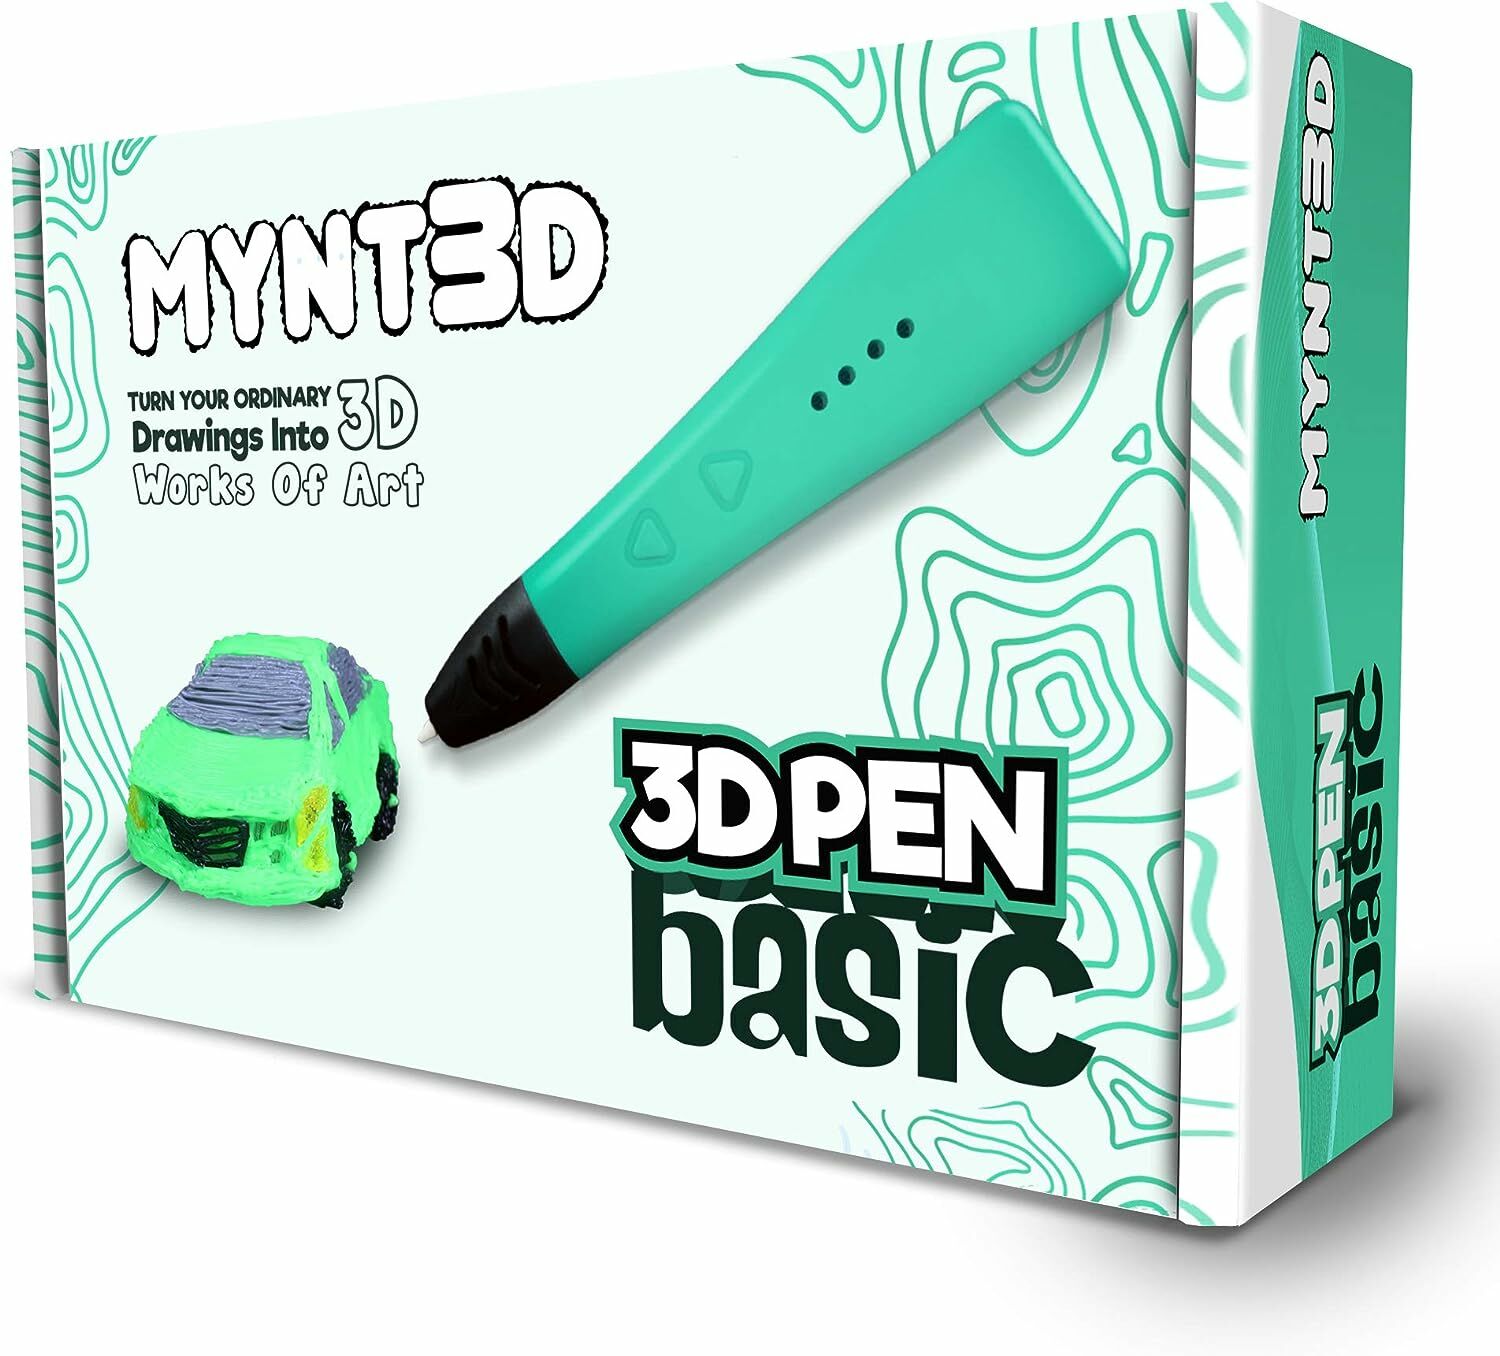 MYNT3D Basic 3D Kalem - 1.75mm ABS ve PLA Uyumlu 3D Yazıcı Kalemi